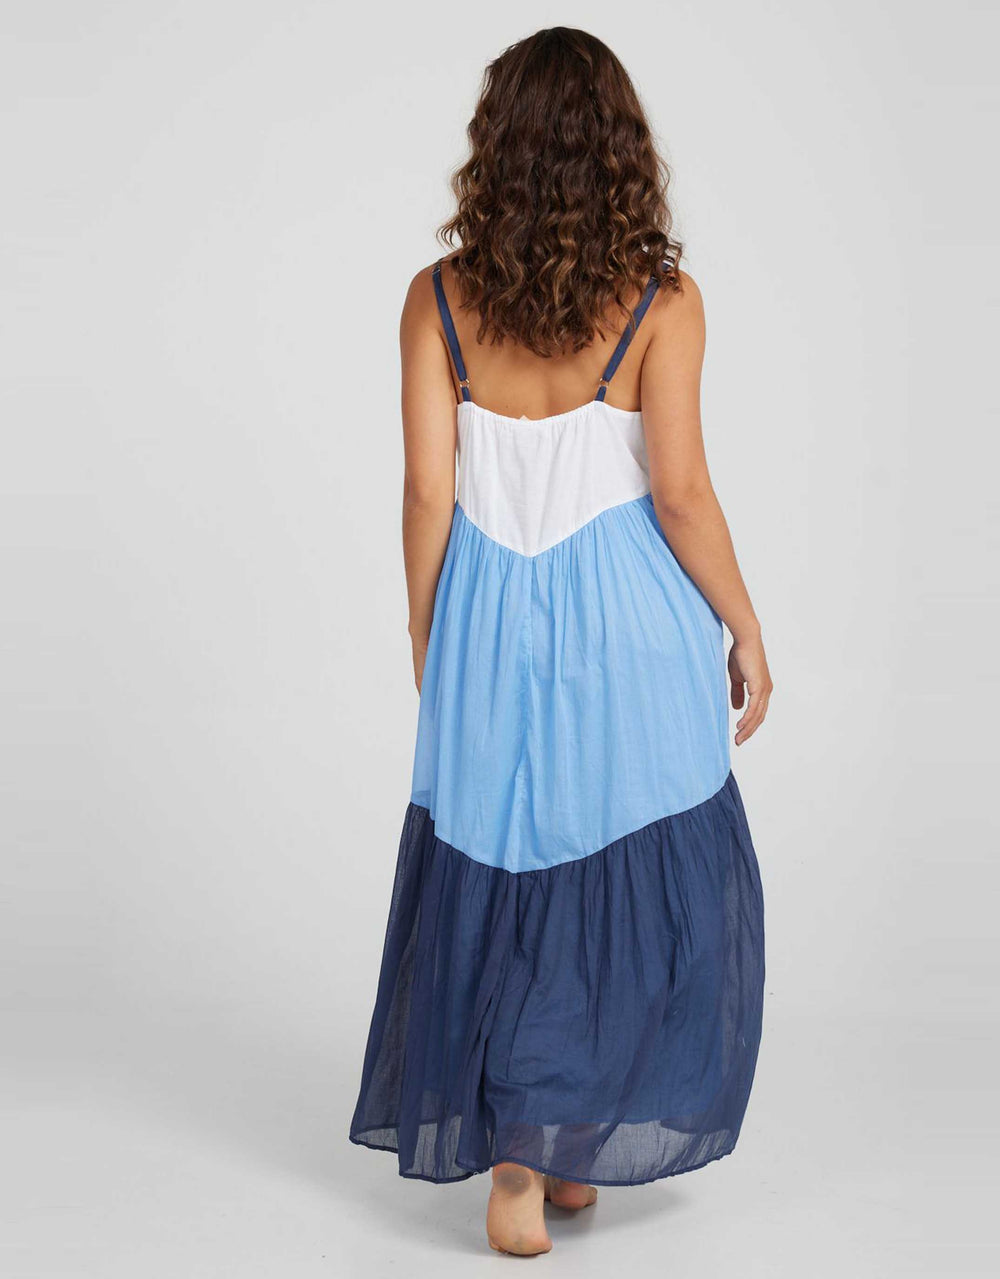 Mexicola Dress - White/Marina Blue/Navy